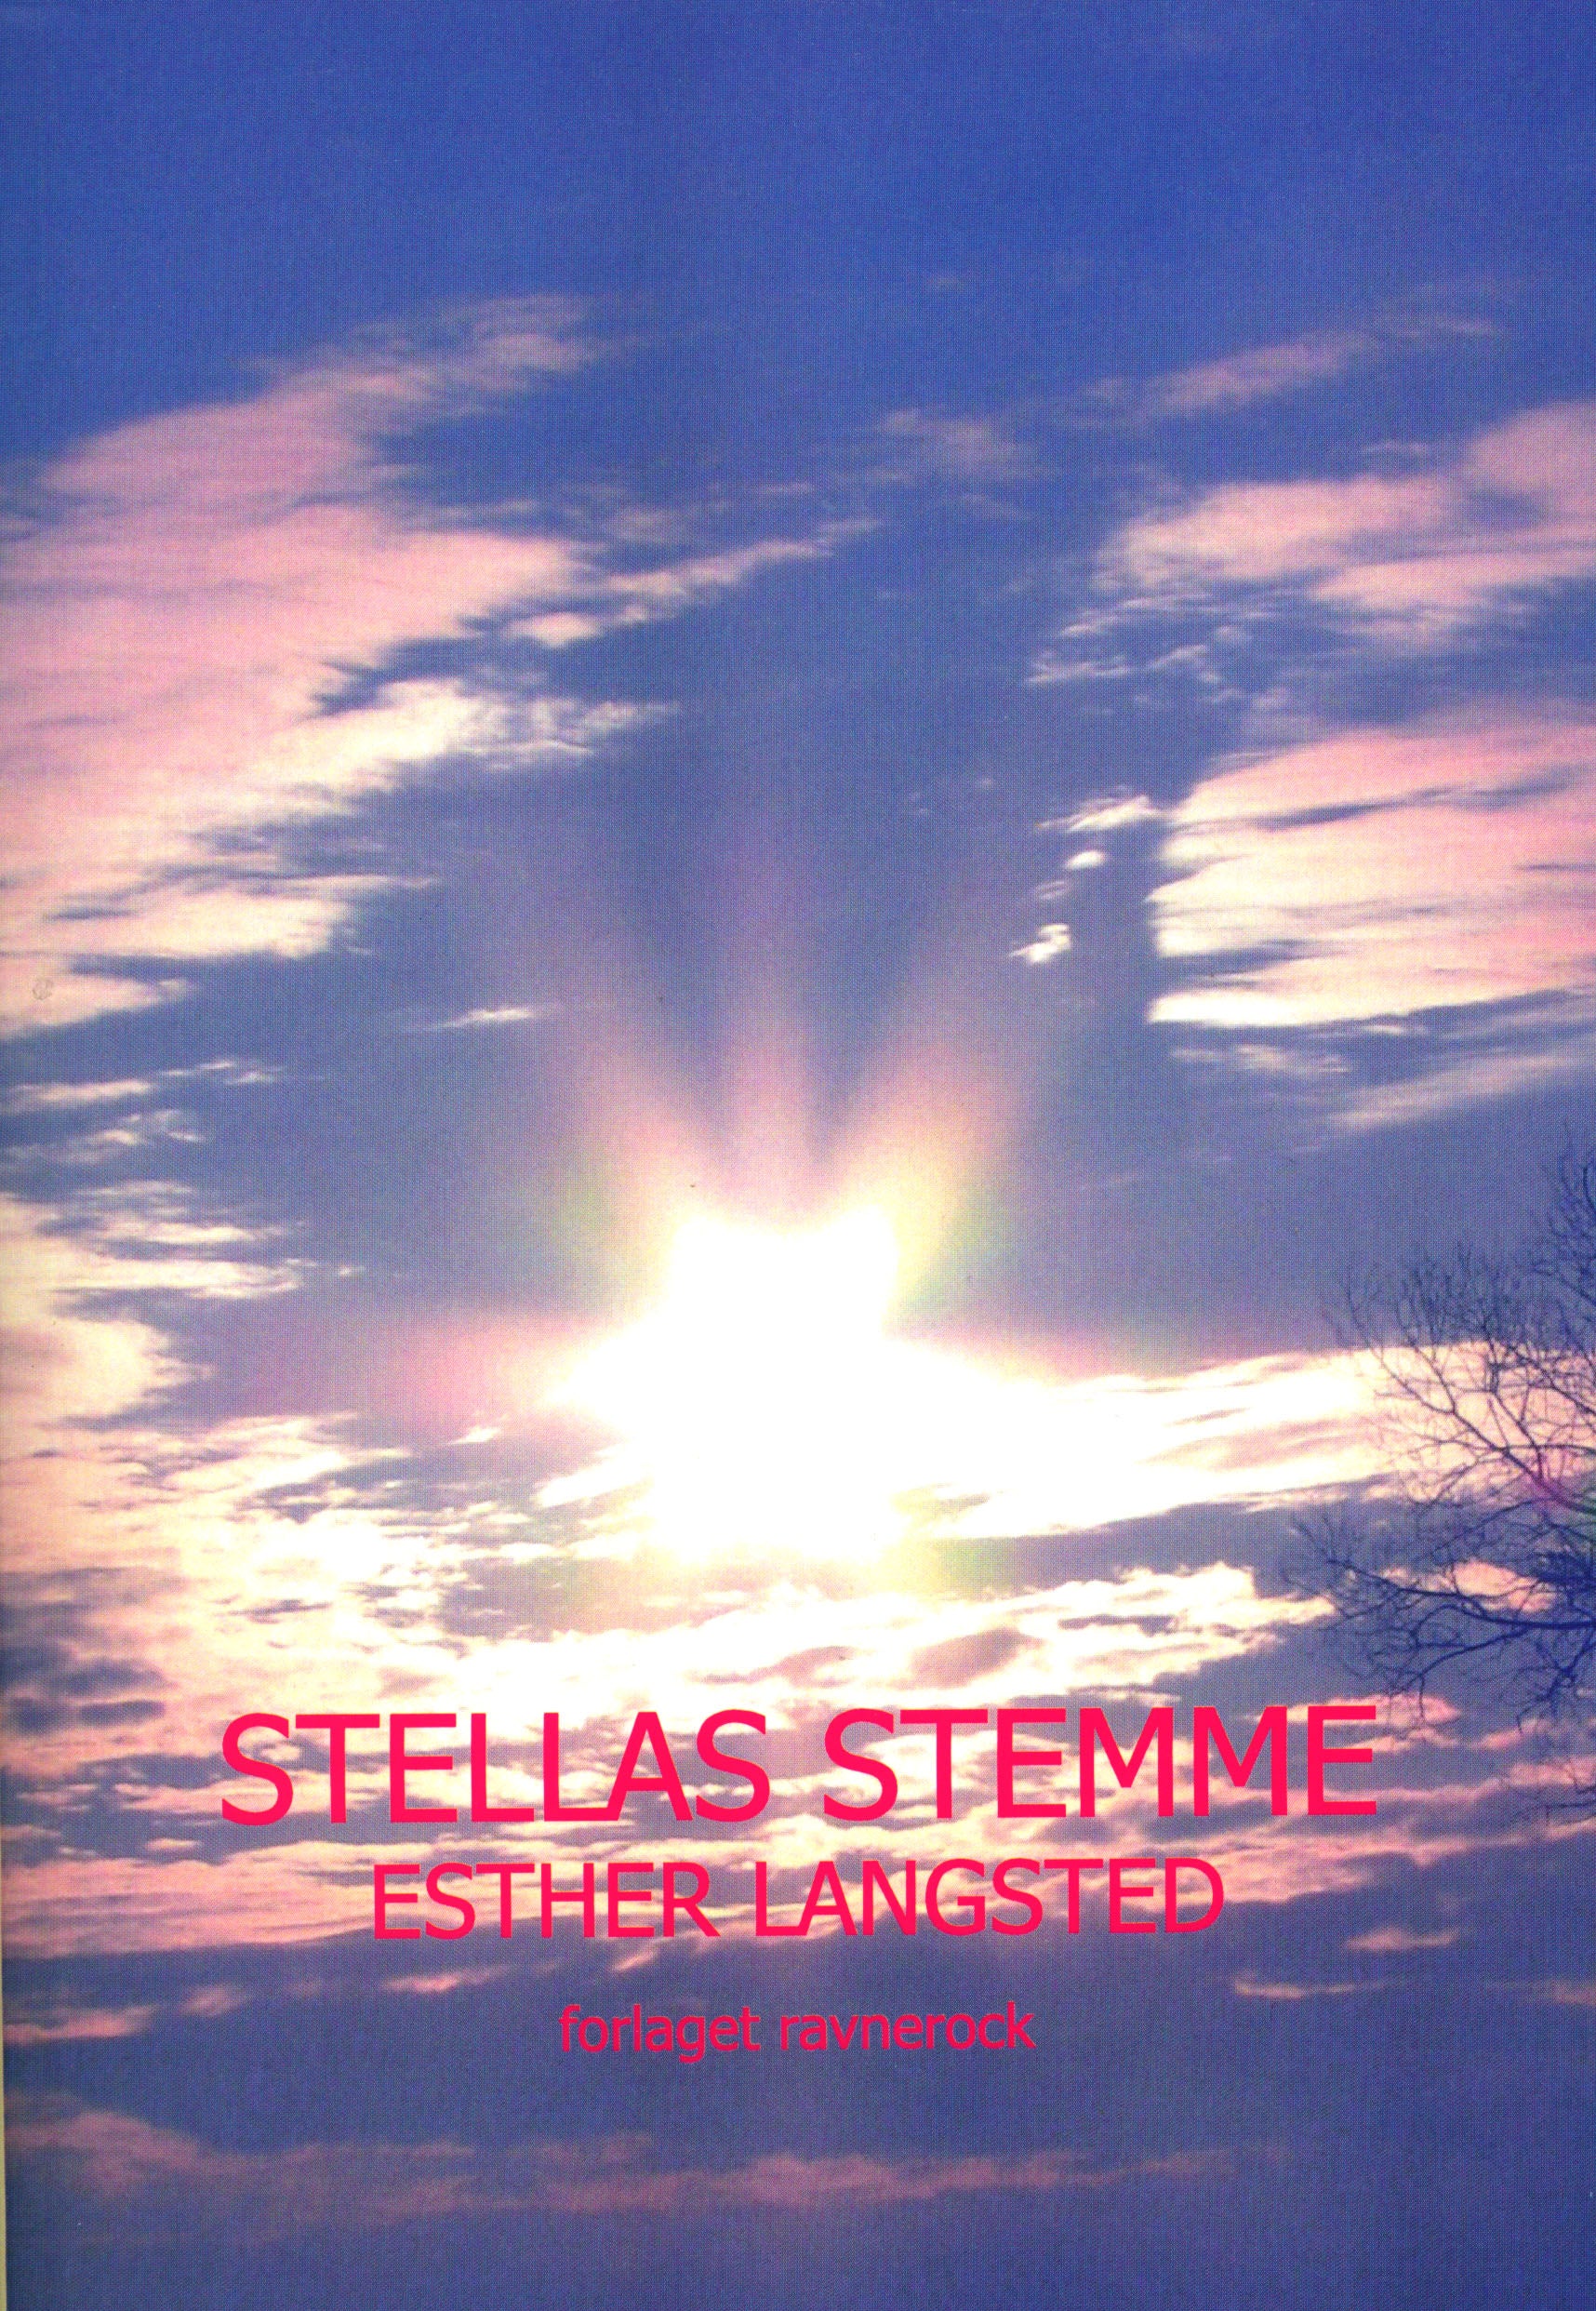 Stellas stemme